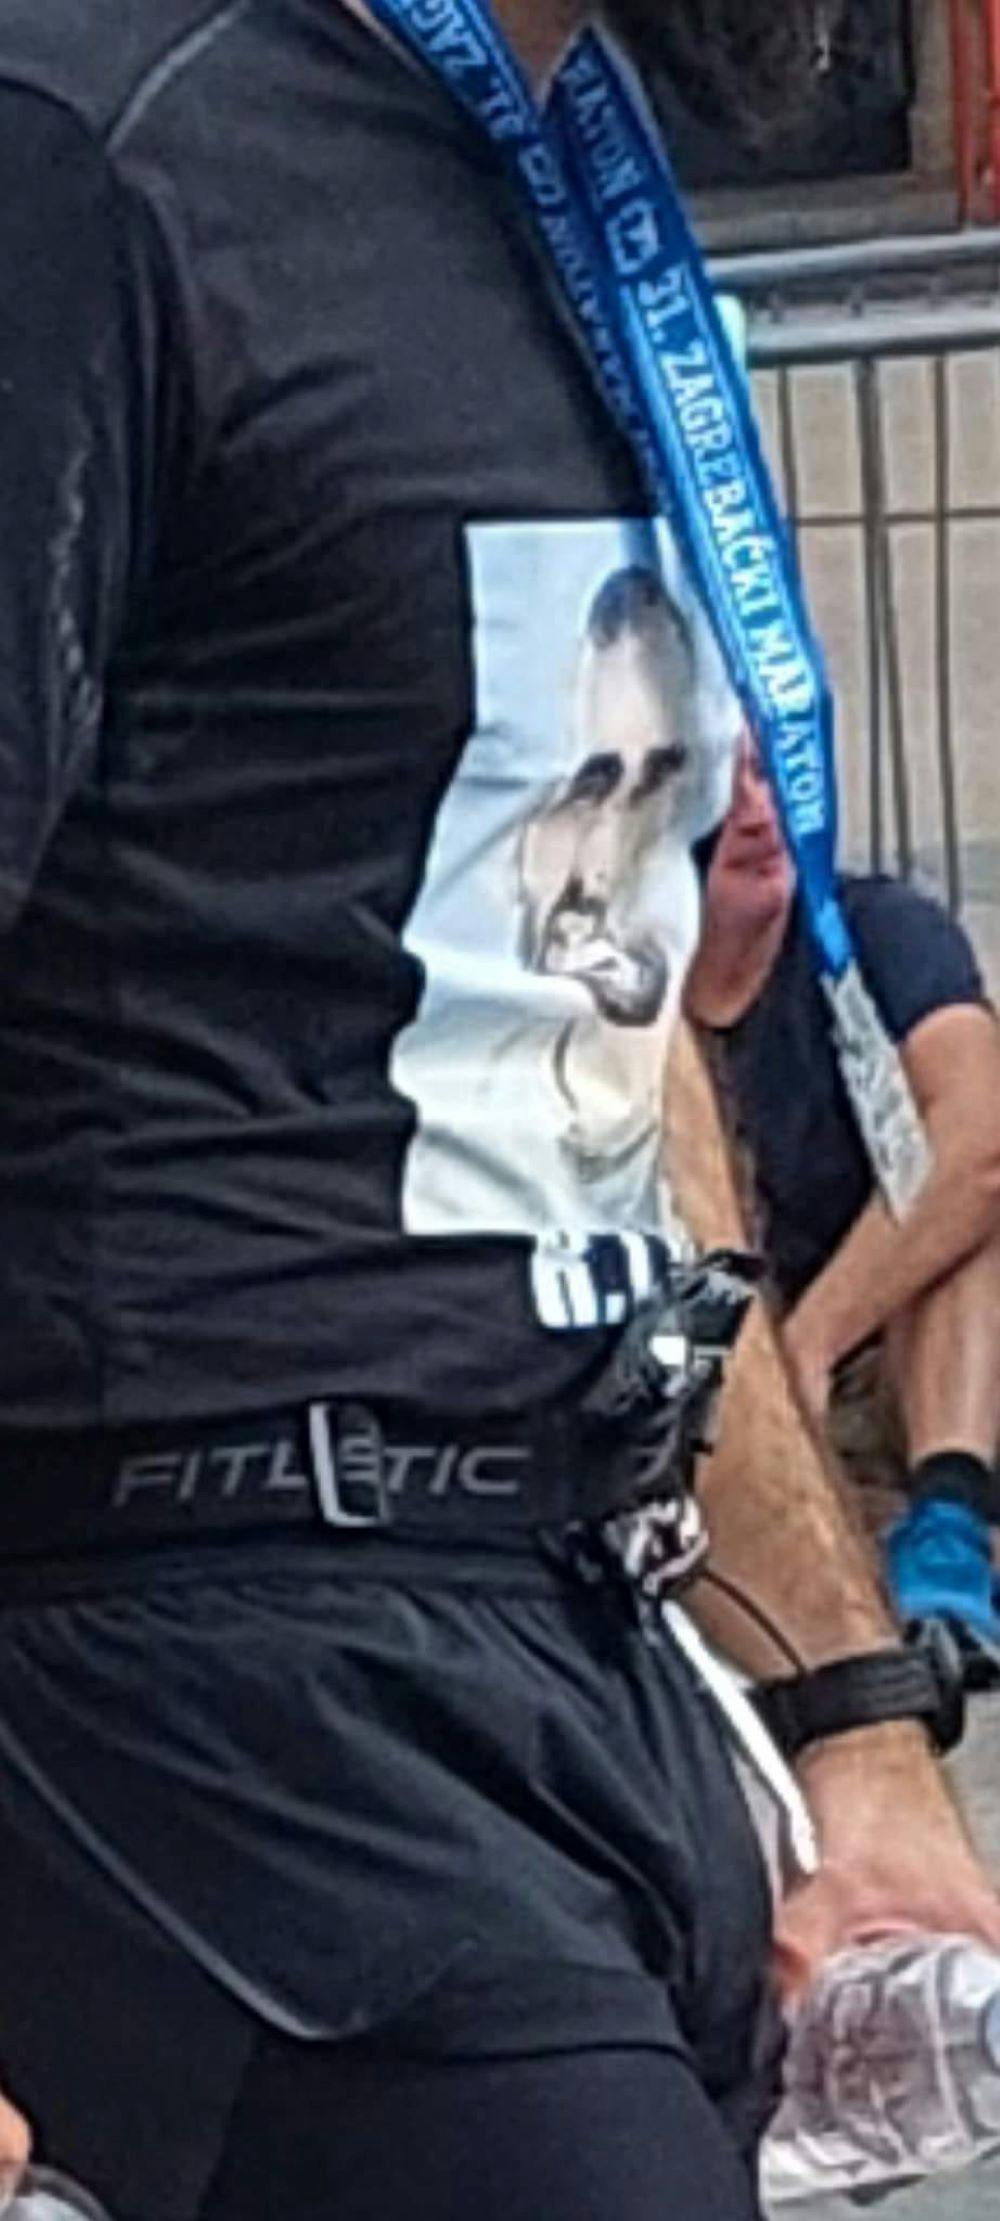 Έλληνας έτρεξε στον Μαραθώνιο του Ζάγκρεμπ με το πρόσωπο του δολοφονημένου φίλου της ΑΕΚ στη φανέλα του runbeat.gr 